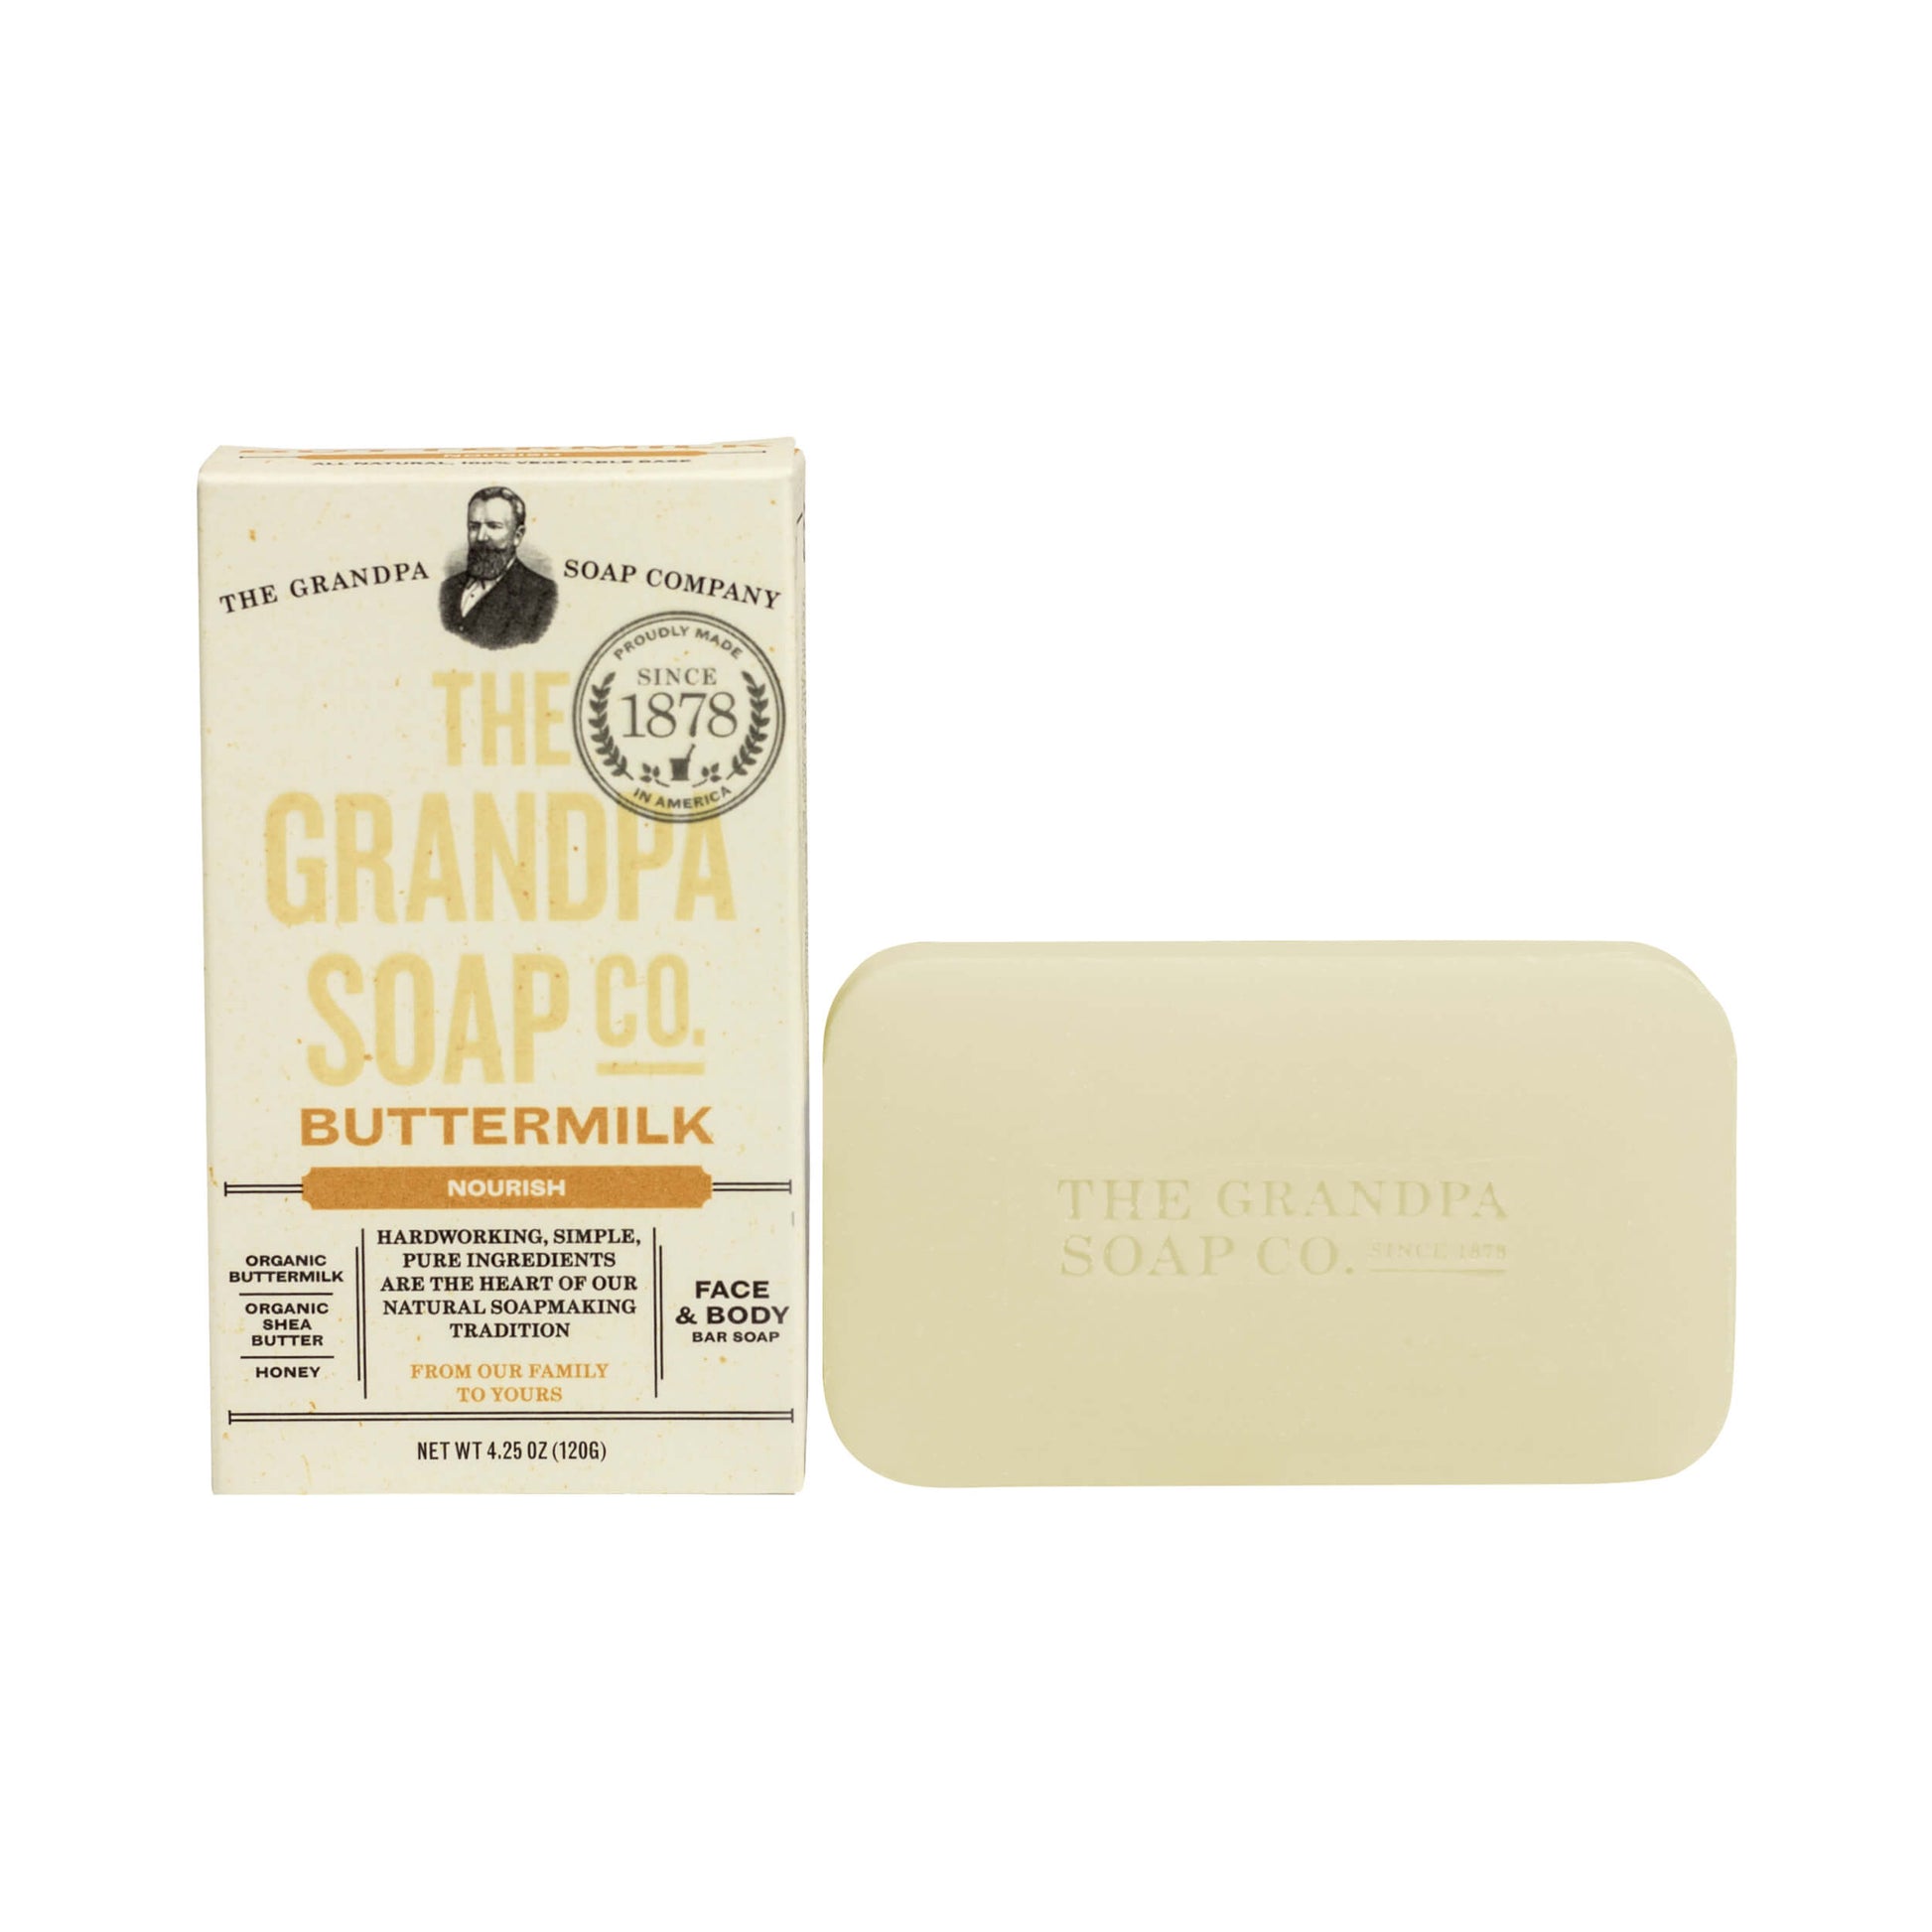 The Grandpa Soap Co Buttermilk Bar Soap Nourish 4.25 oz 120g